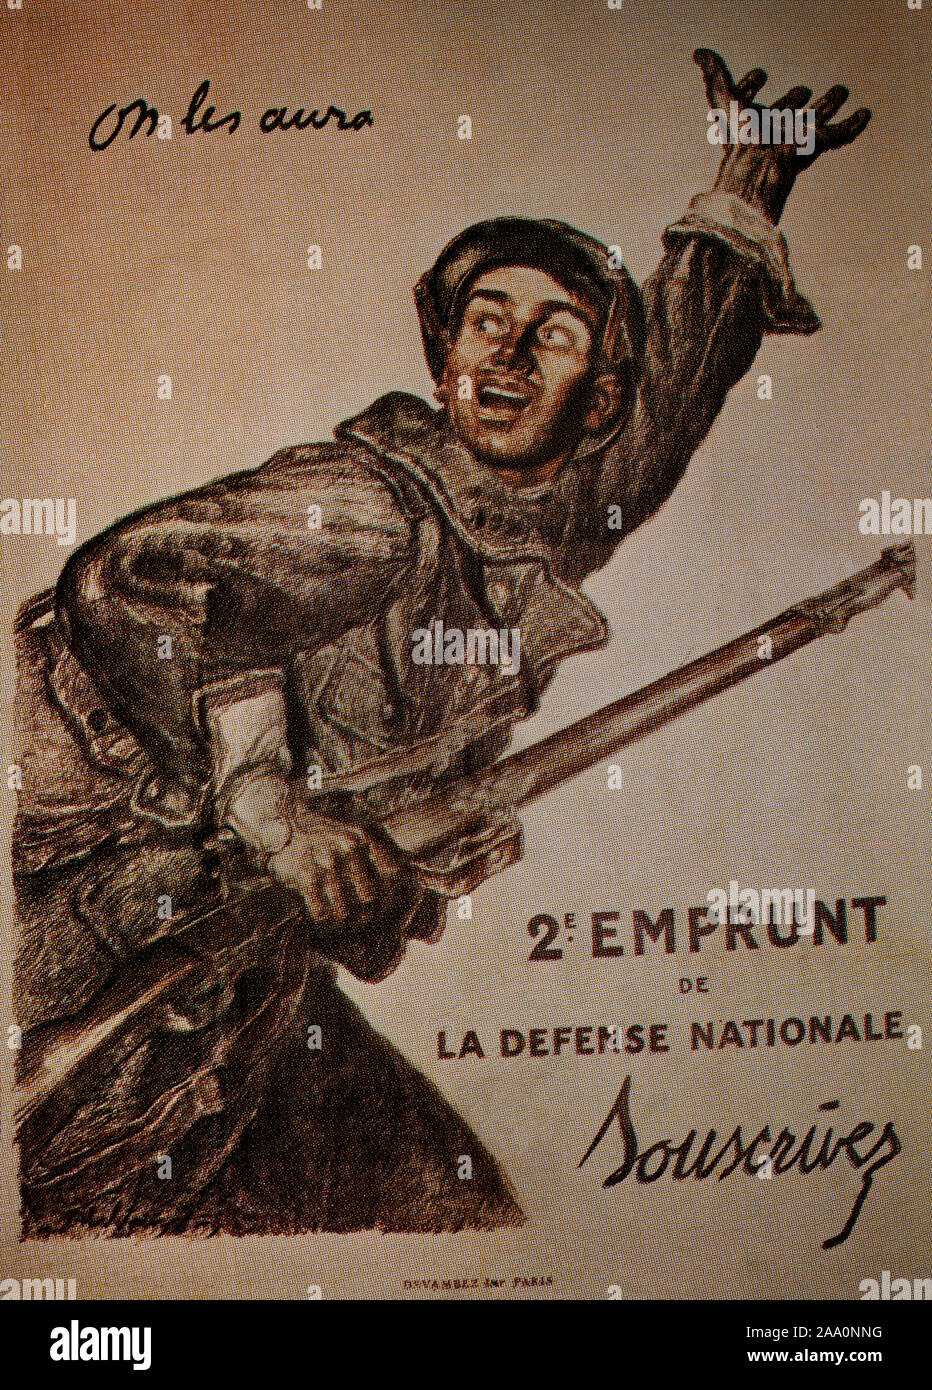 Una guerra mondiale una assunzione francese poster da 1917 , utilizzando il termine 'On les aura' o 'avremo loro'. Foto Stock